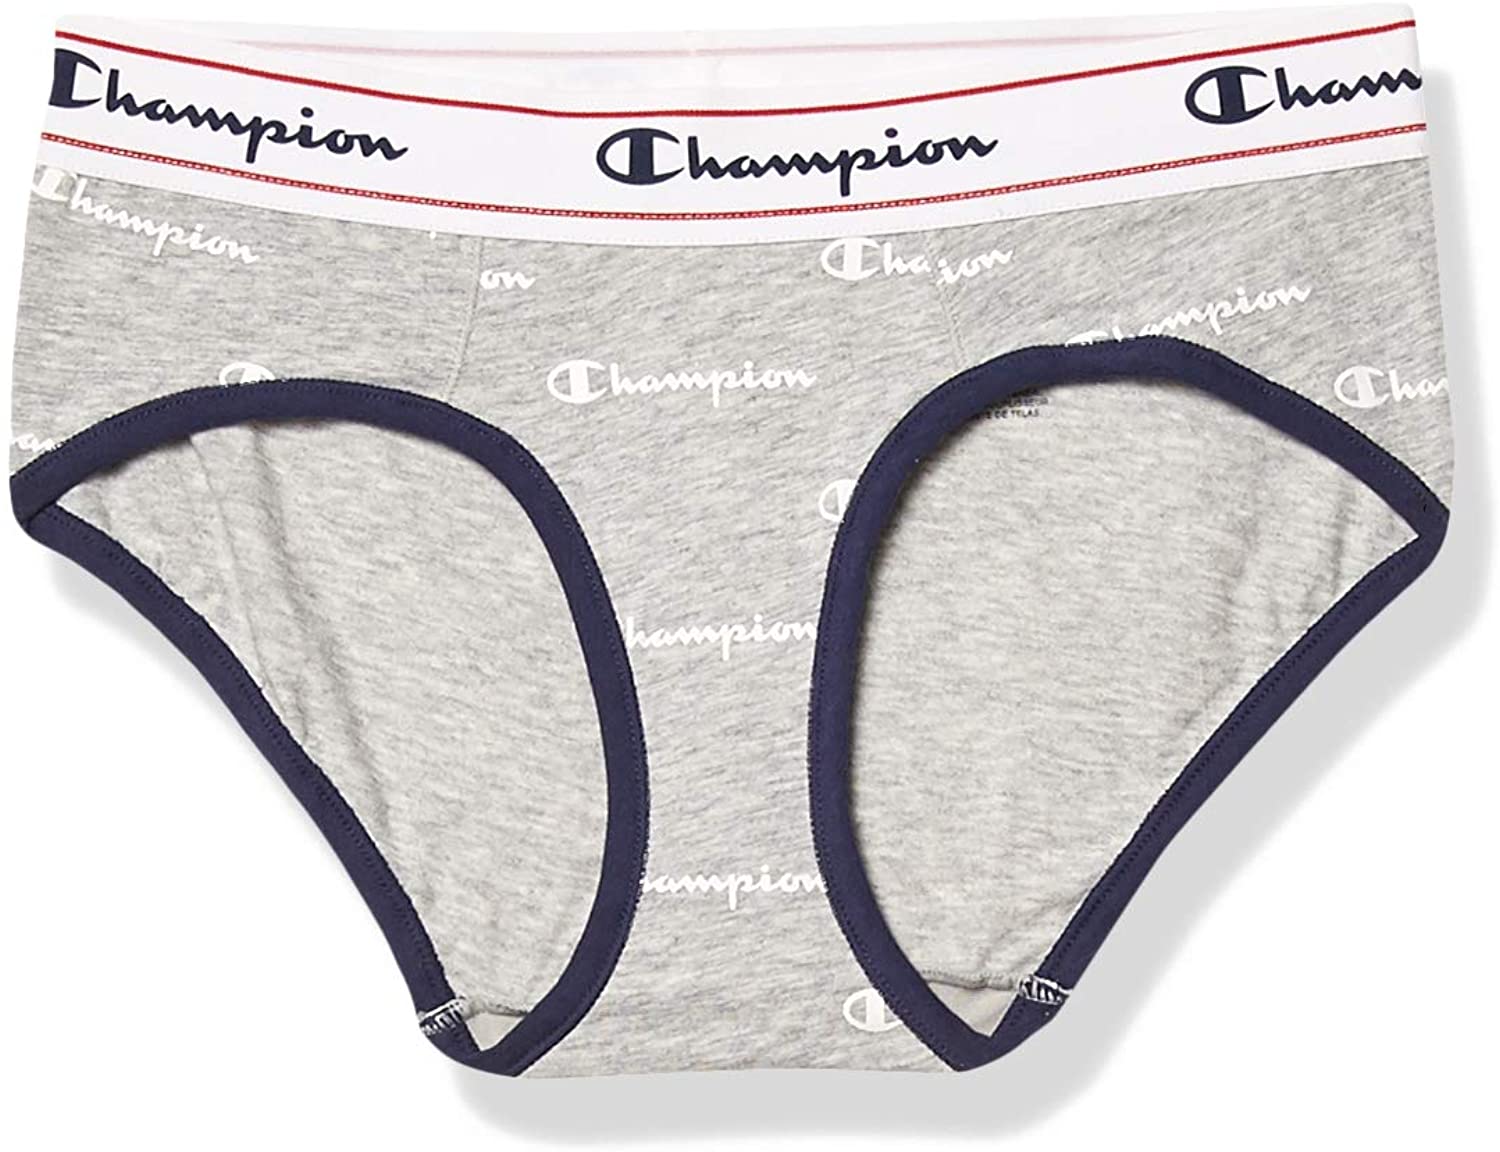 Women's Hipster Underwear, Champion